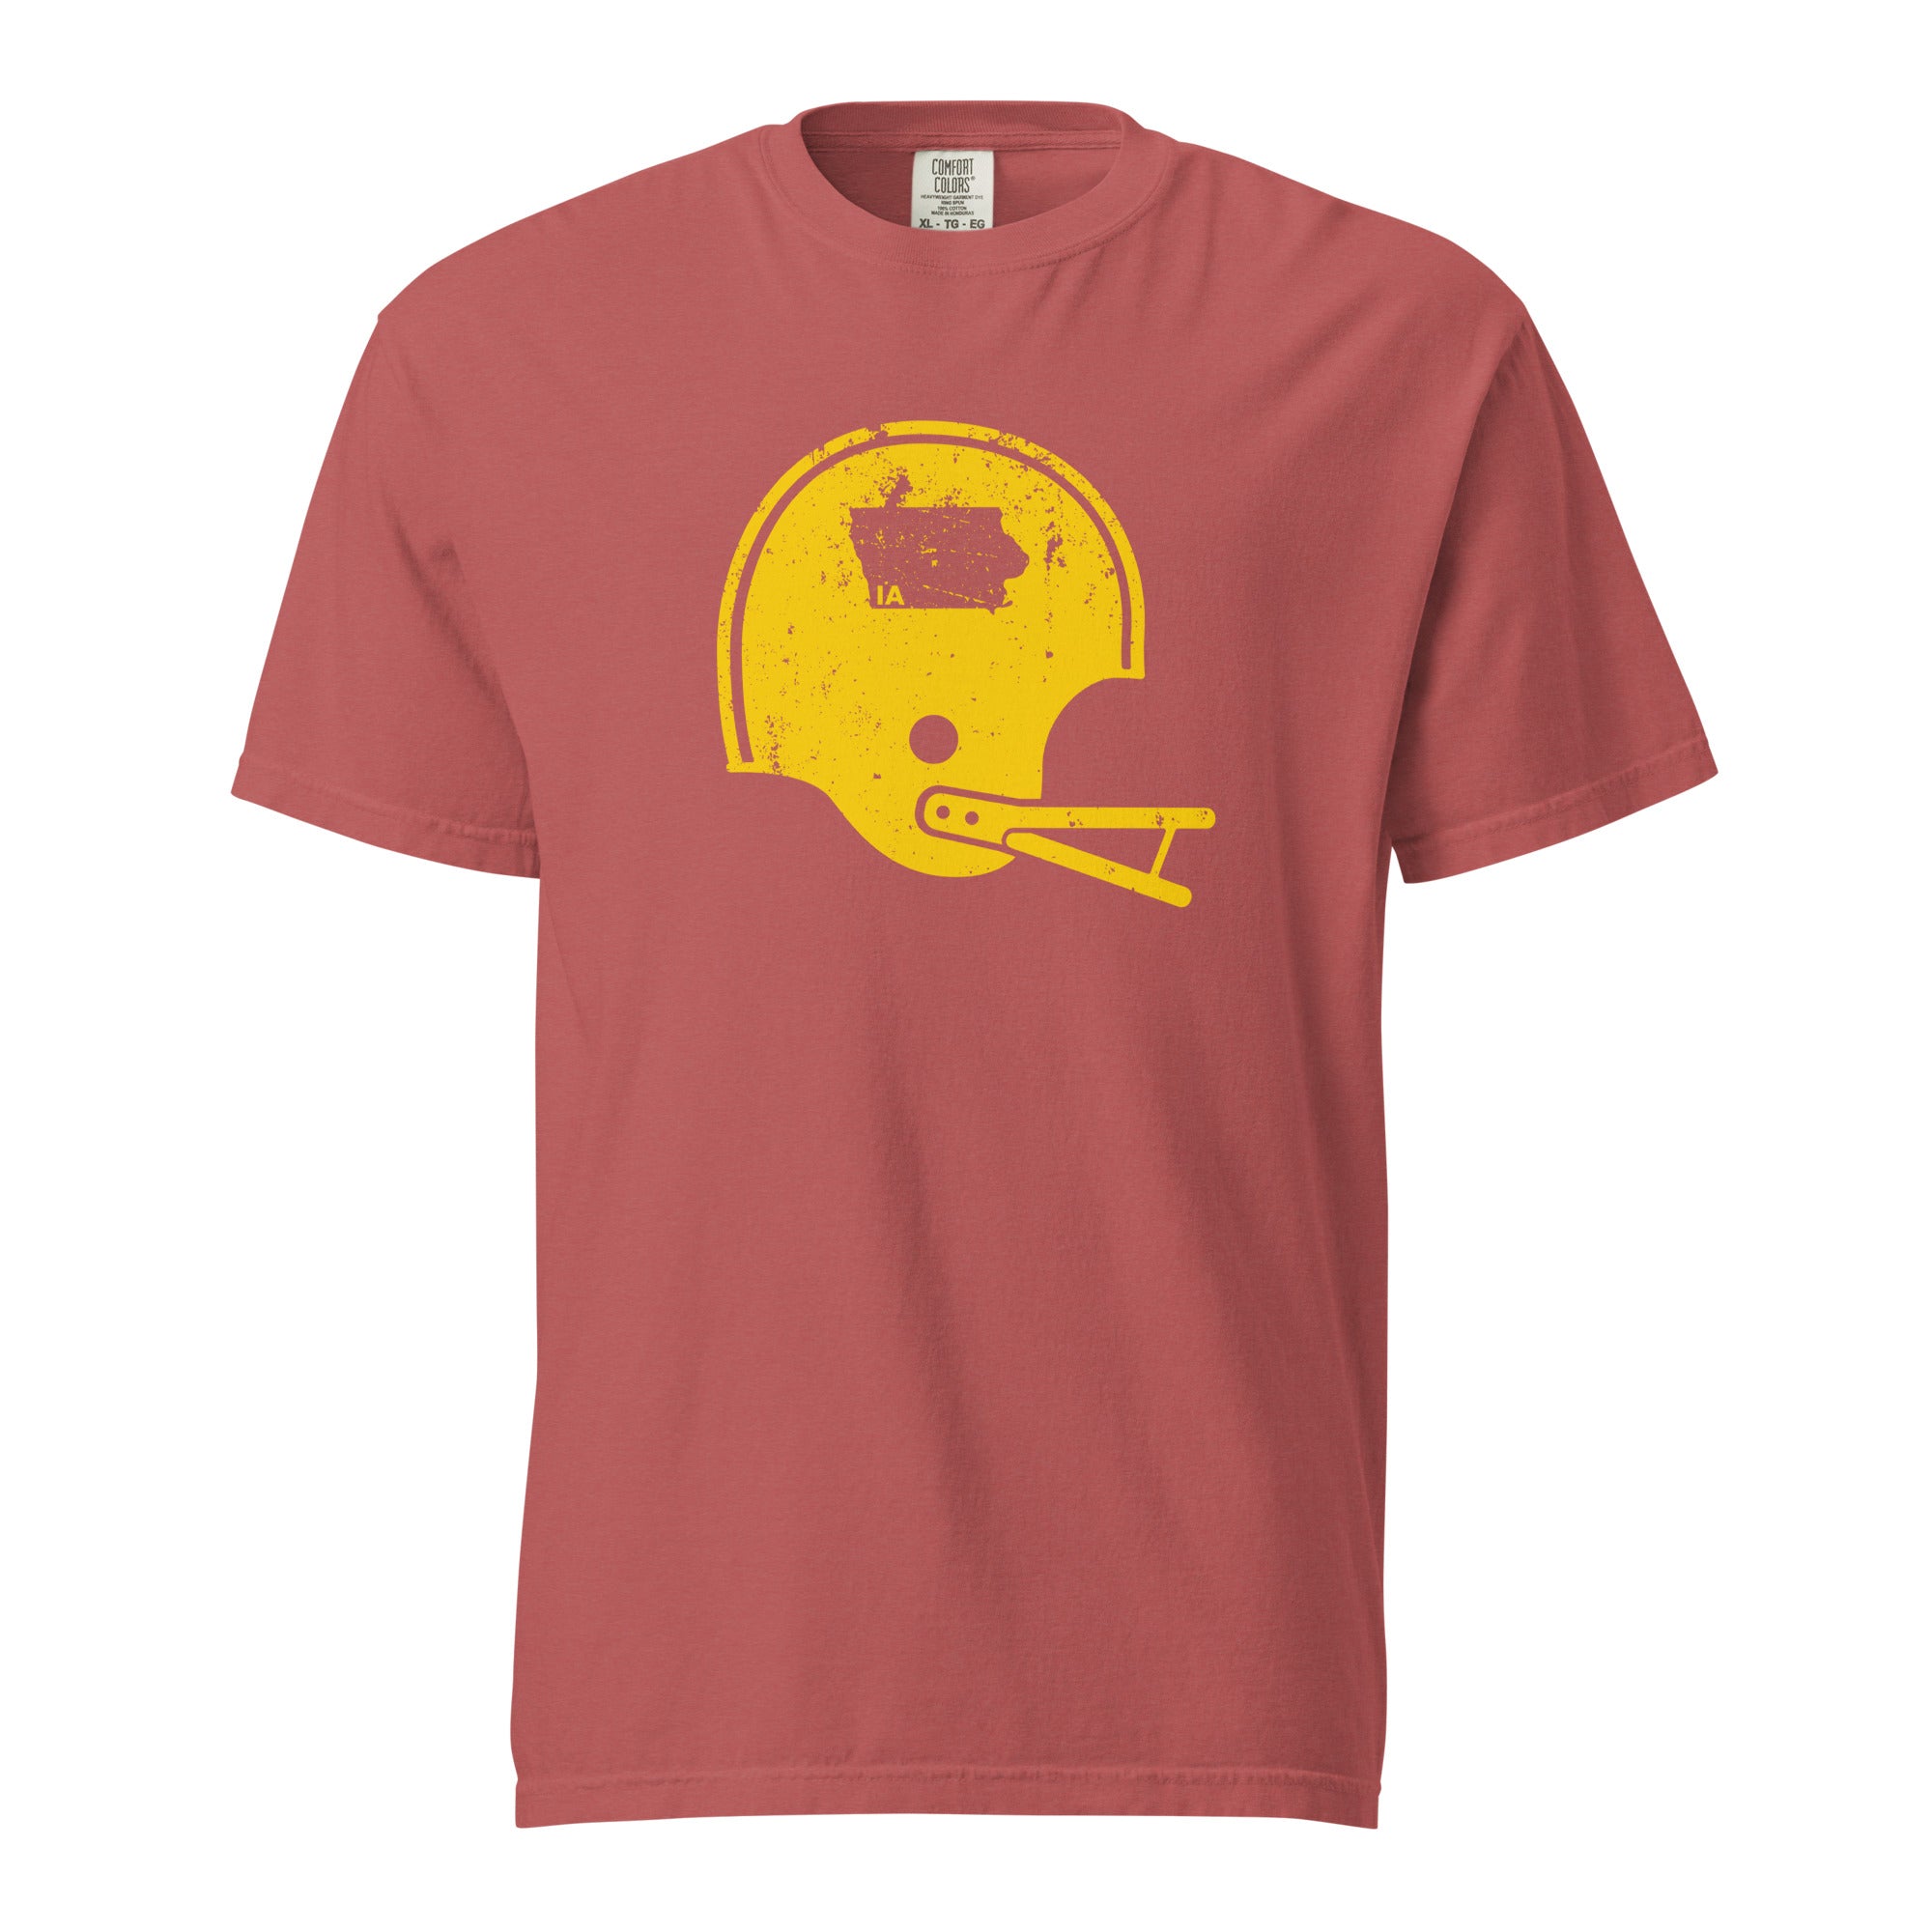 unisex-garment-dyed-heavyweight-t-shirt-crimson-front-65cbf1a2eee41.jpg